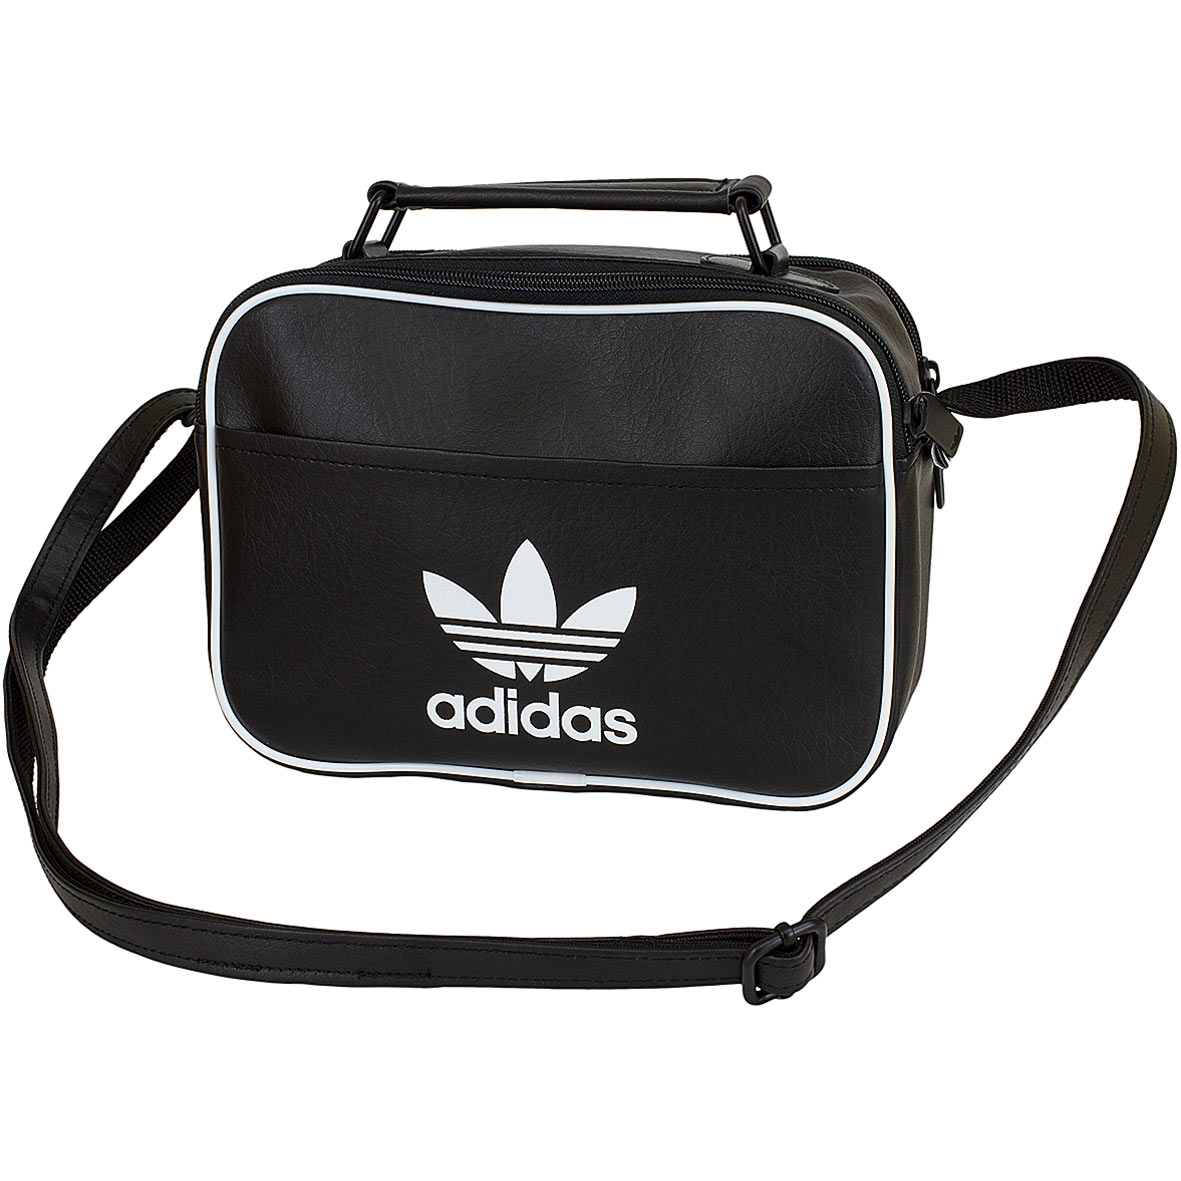 ☆ Adidas Originals Tasche Mini Airline AC CL schwarz - hier bestellen!